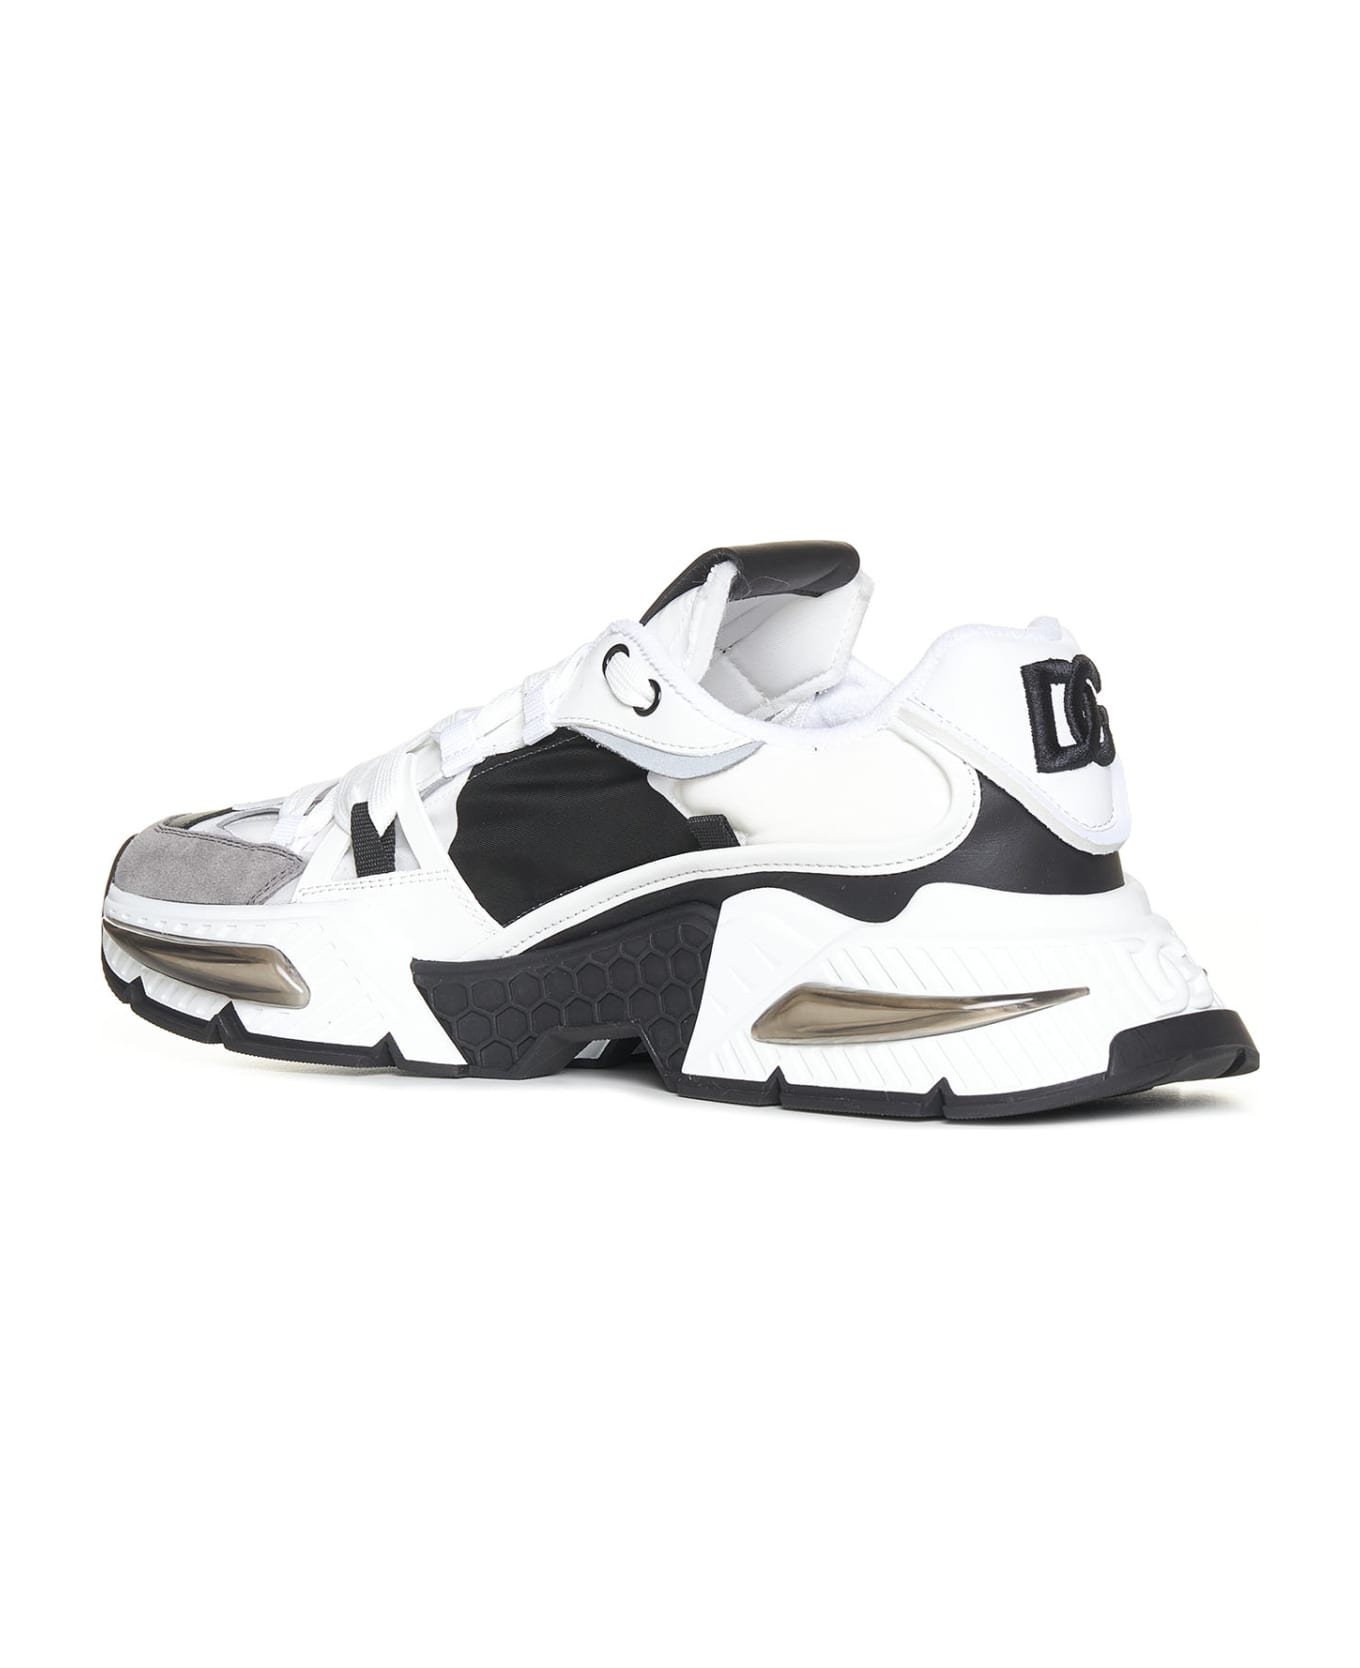 Dolce & Gabbana Sneakers - white/black スニーカー